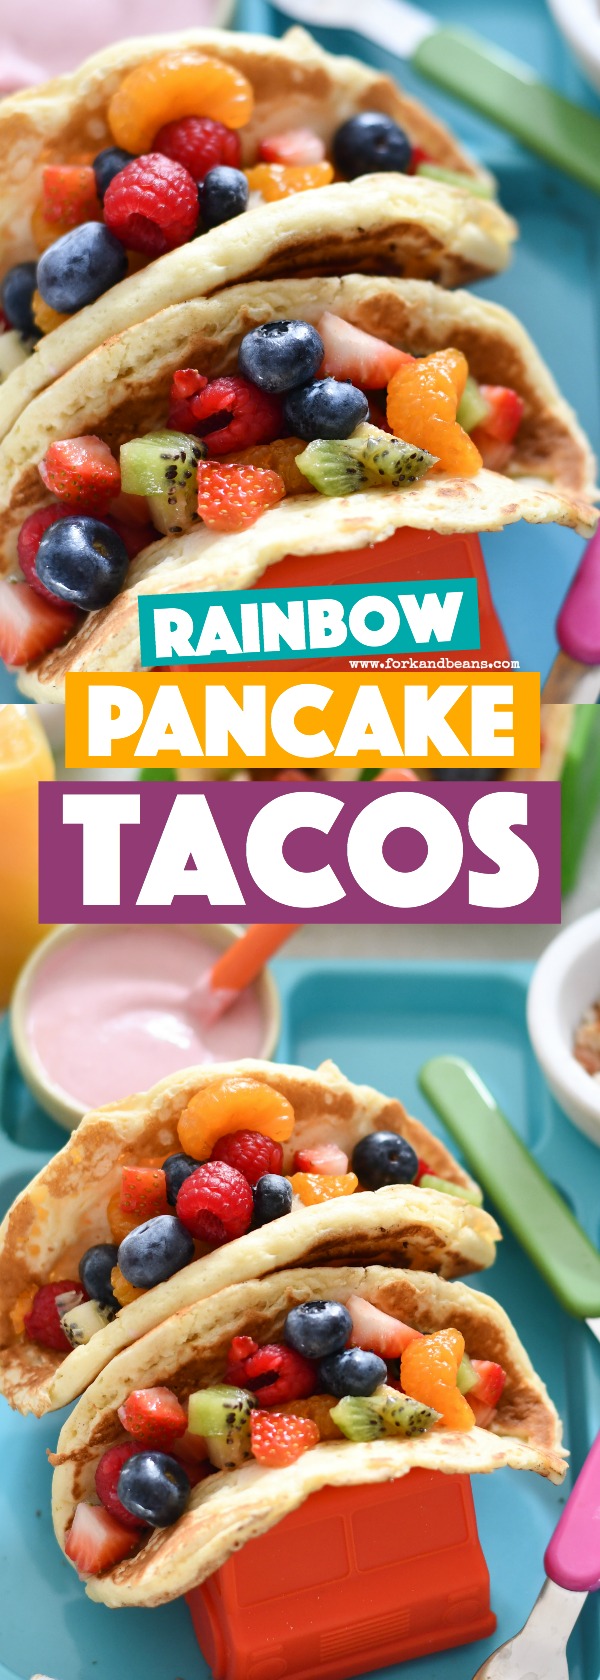 An upclose shot of 2 rainbow pancake tacos